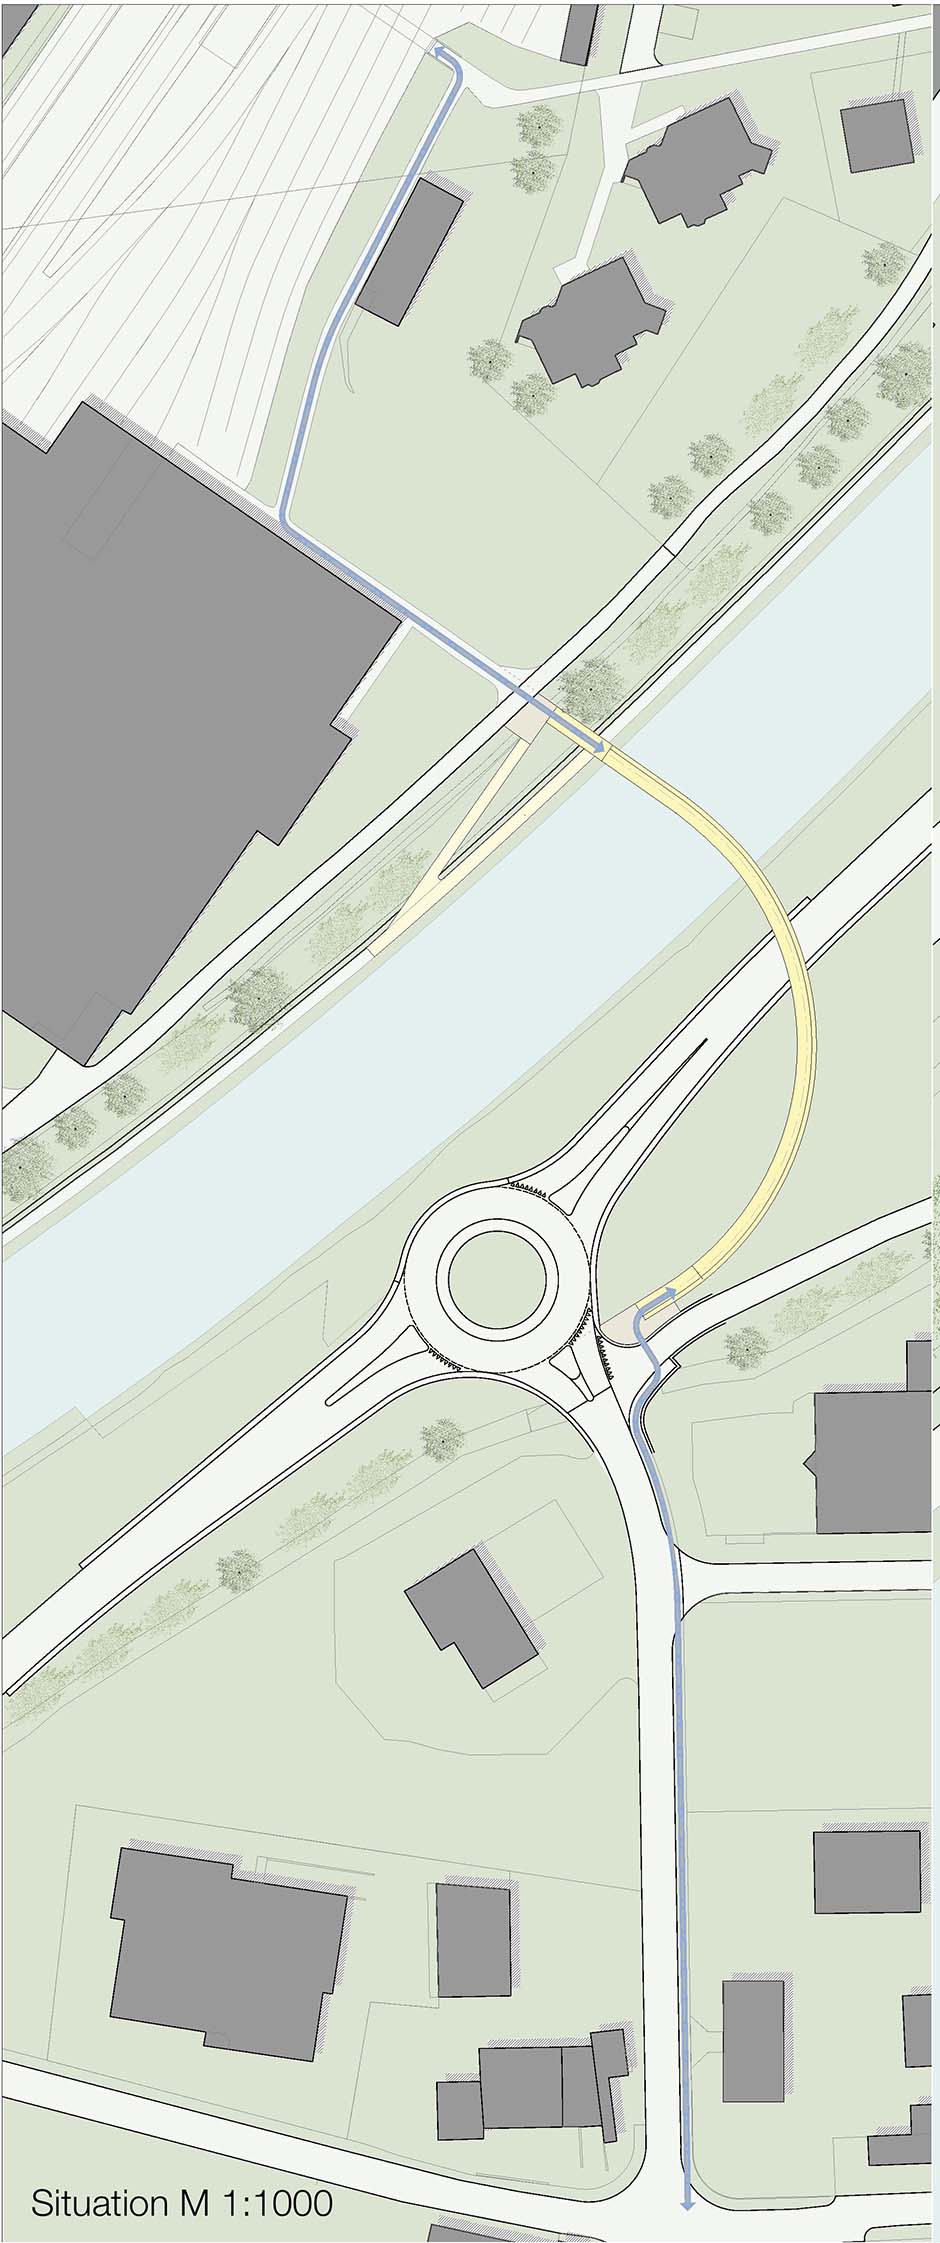 Bild zum Projekt Wettbewerb Fußgängerüberführung Bahnhof Samedan, Cho d' Punt (Schweiz)